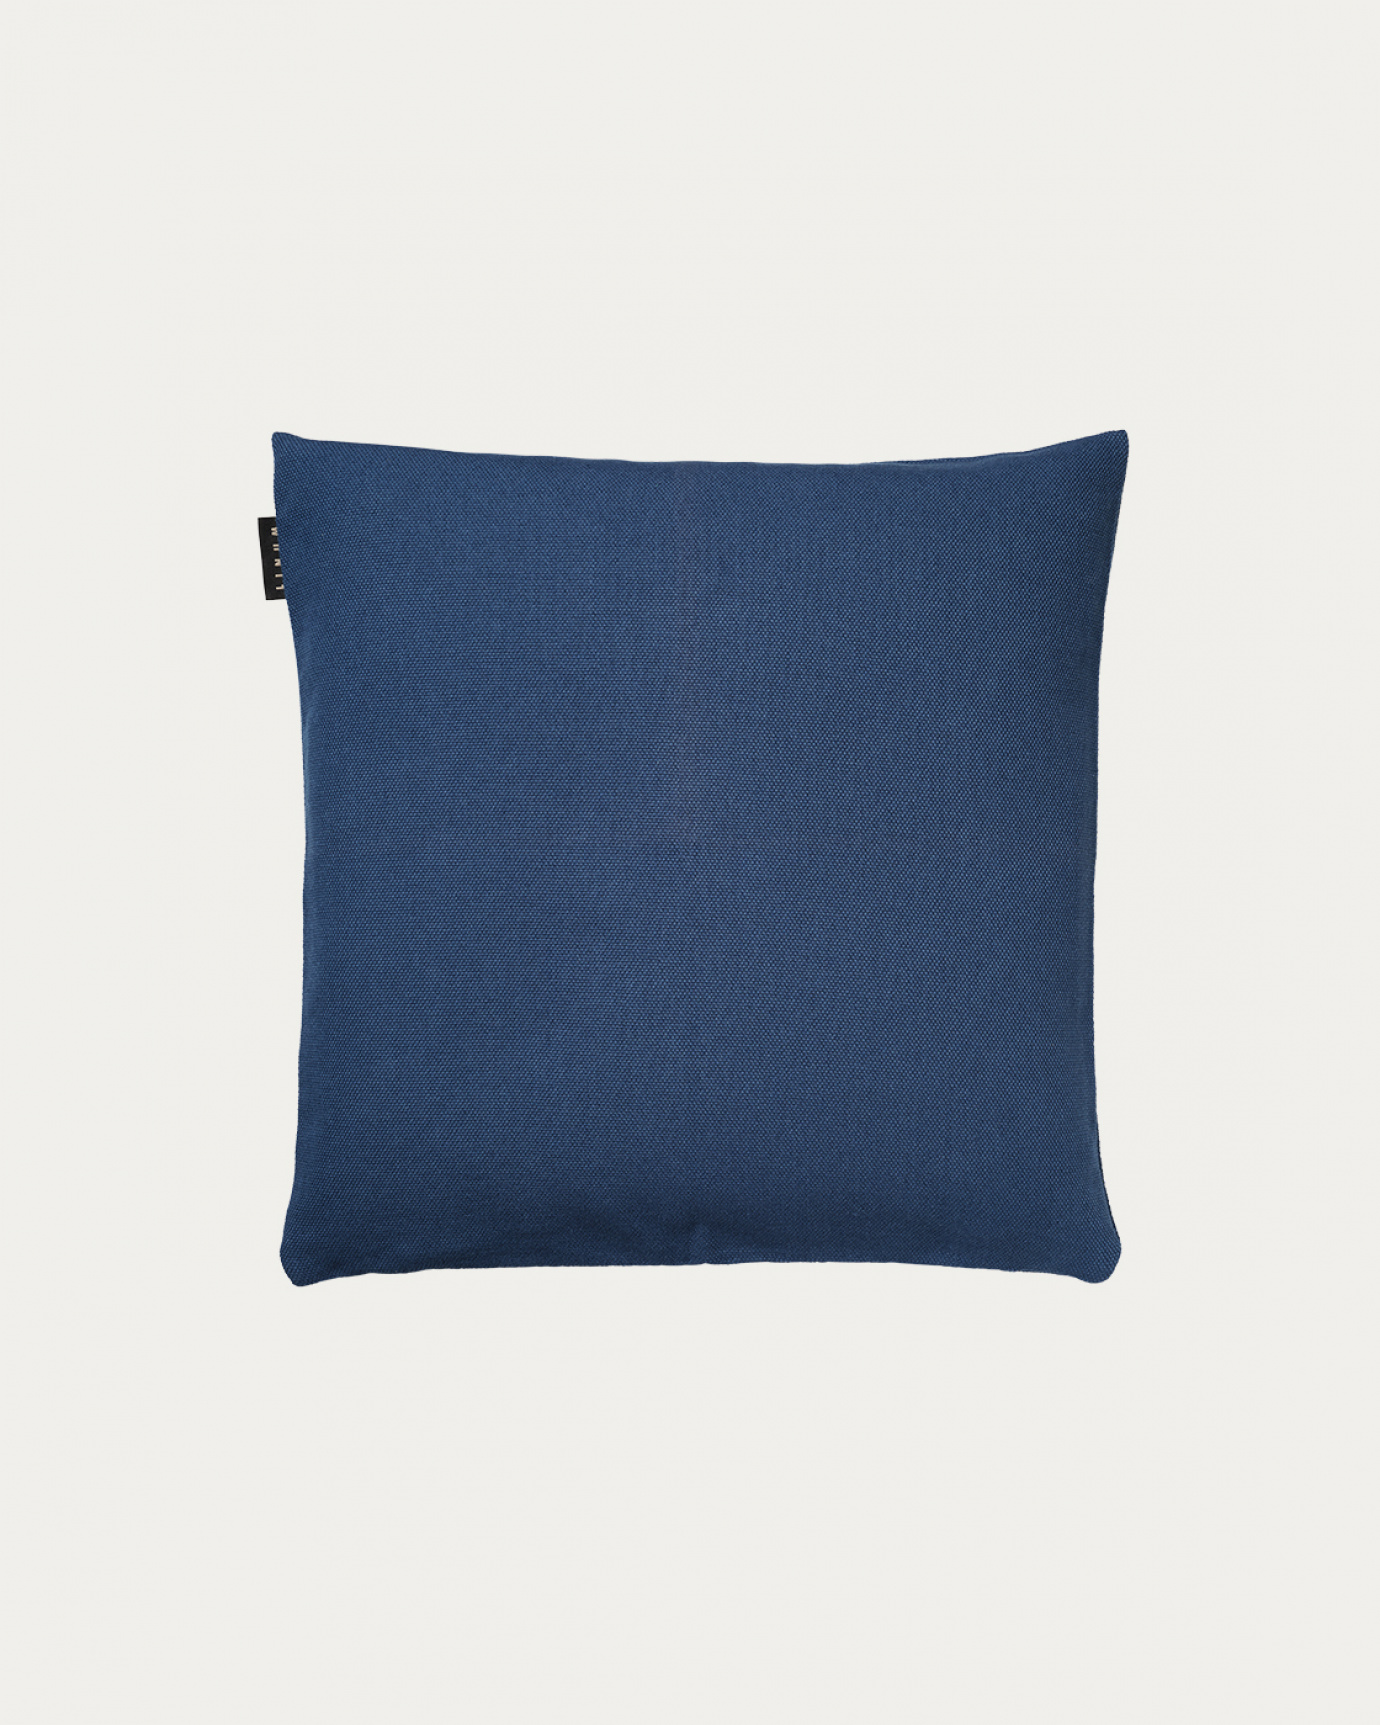 Produktbild indigoblau PEPPER Kissenhülle aus weicher Baumwolle von LINUM DESIGN. Einfach zu waschen und langlebig für Generationen. Größe 40x40 cm.